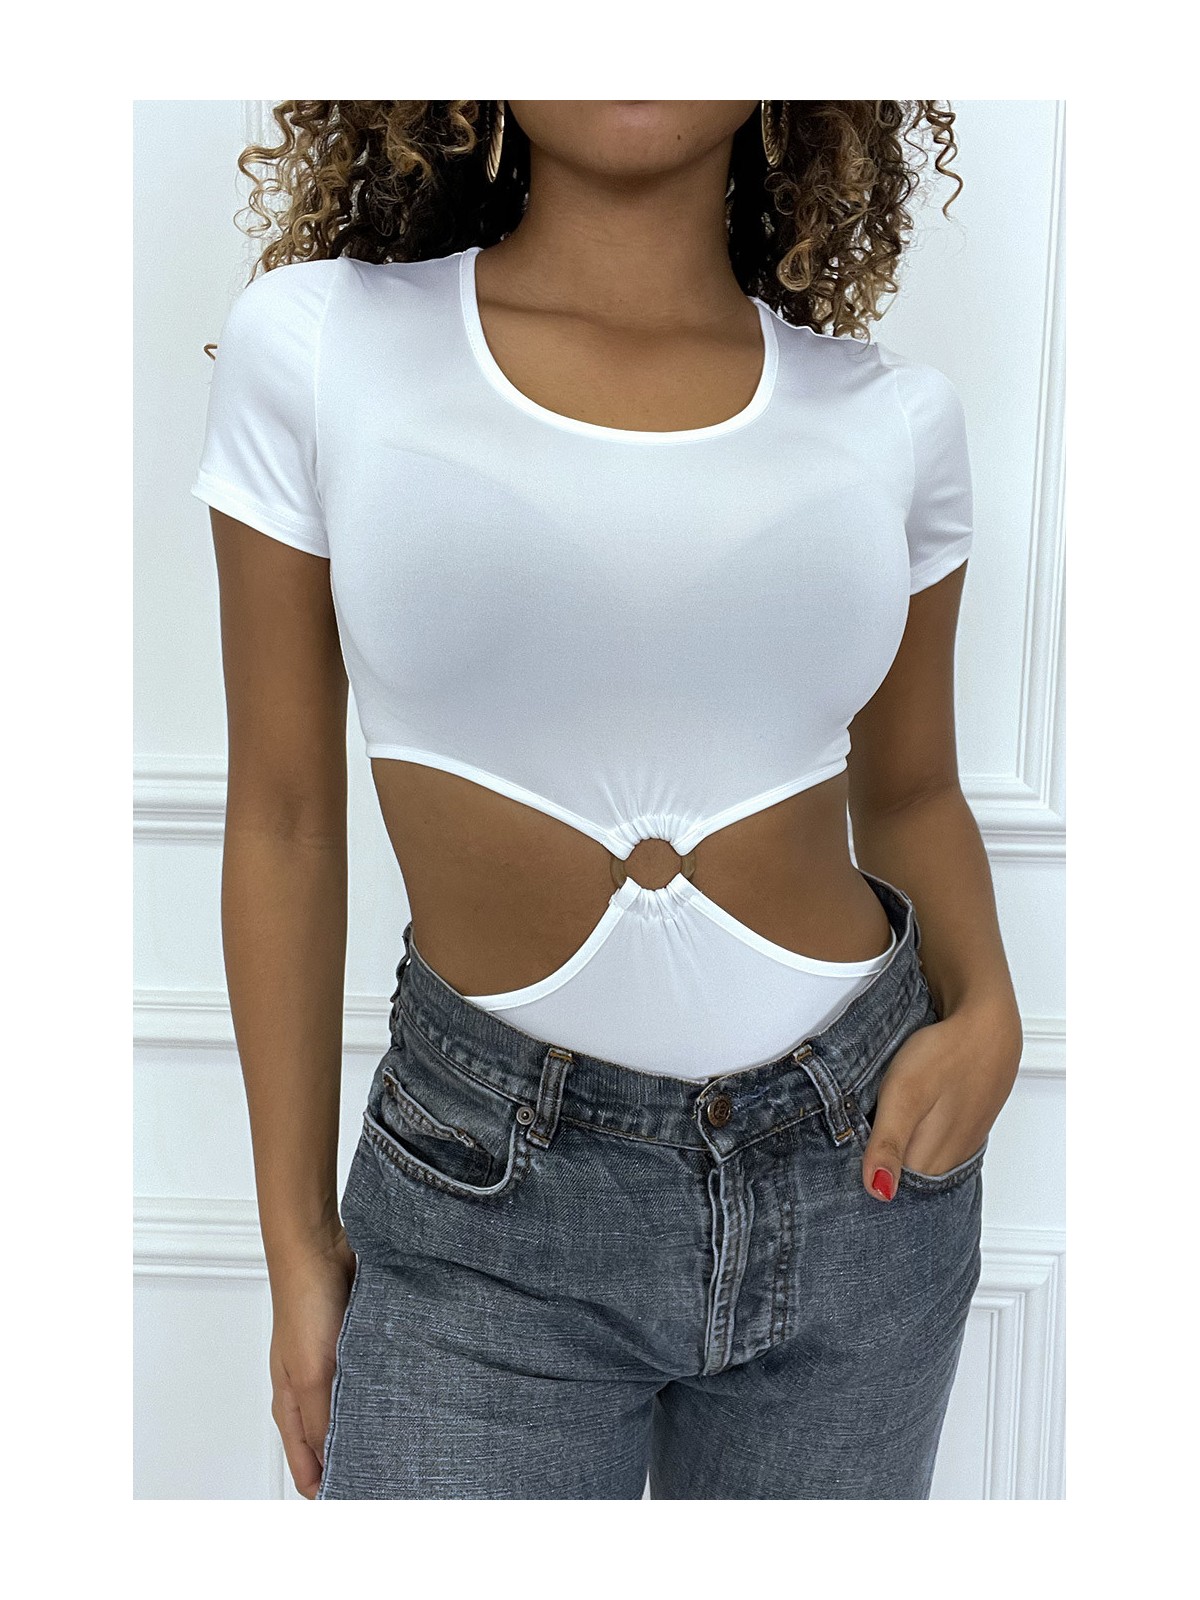 Body blanc tee shirt facon trikini avec anneaux - 5